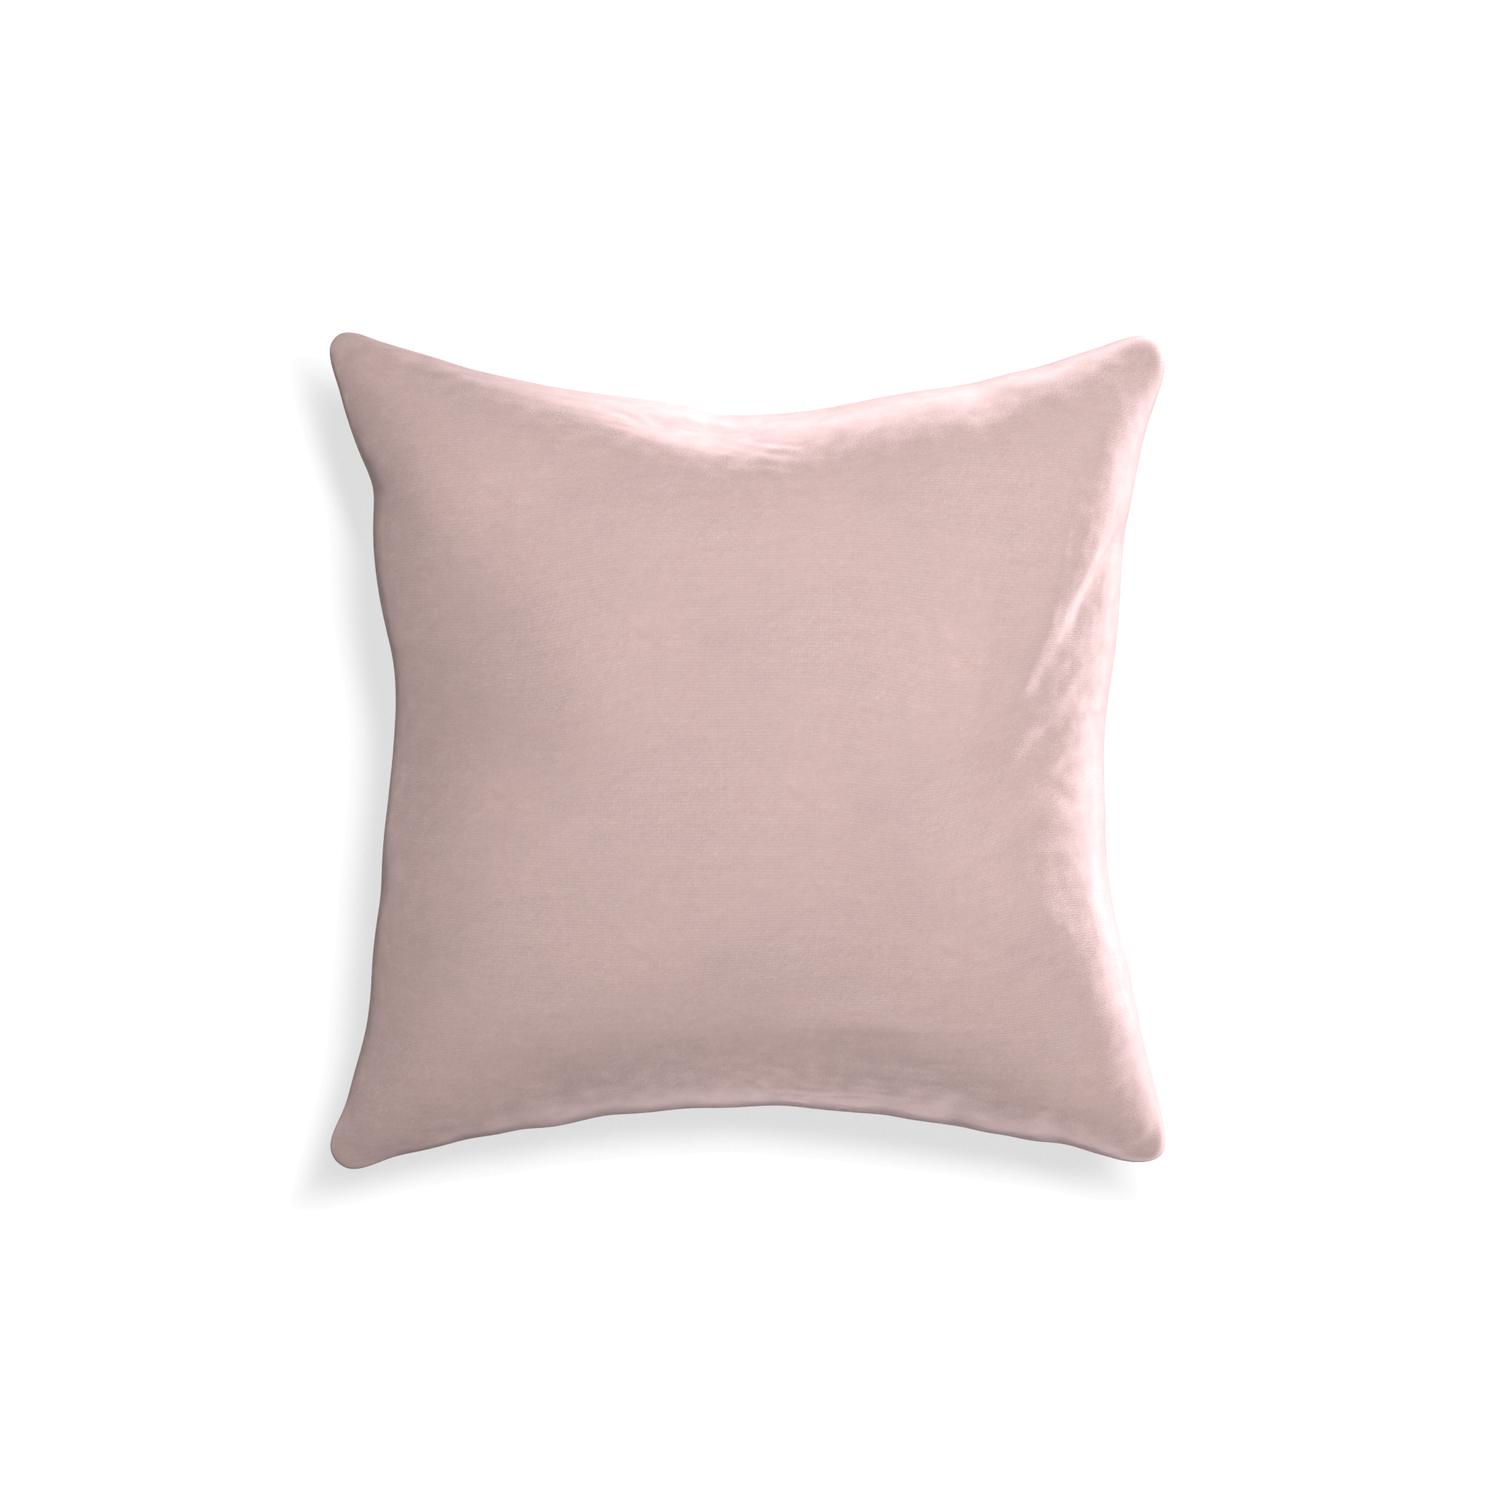 18-square rose velvet custom pillow with none on white background